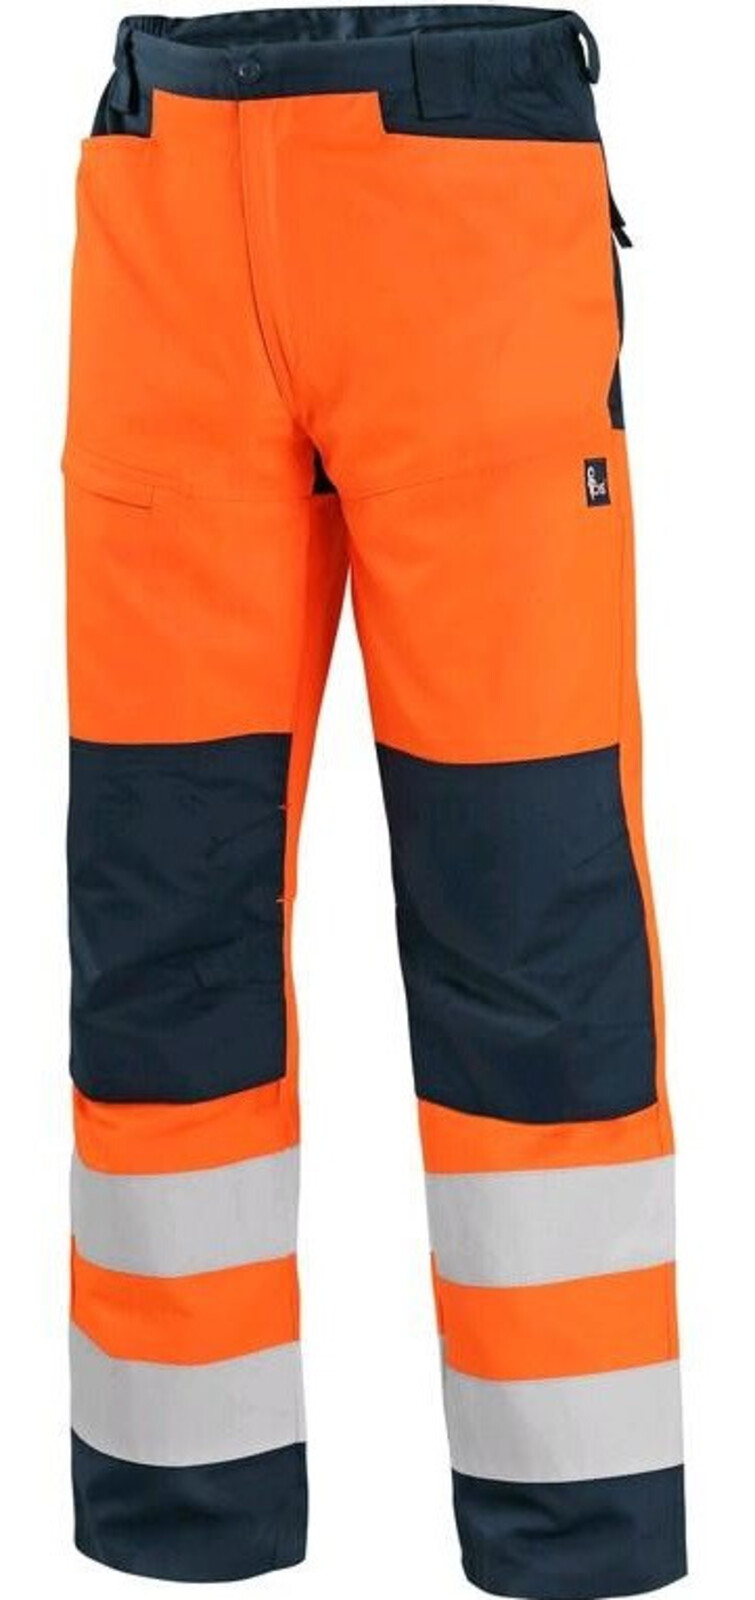 Pánske letné reflexné nohavice CXS Halifax - veľkosť: 60, farba: oranžová/navy